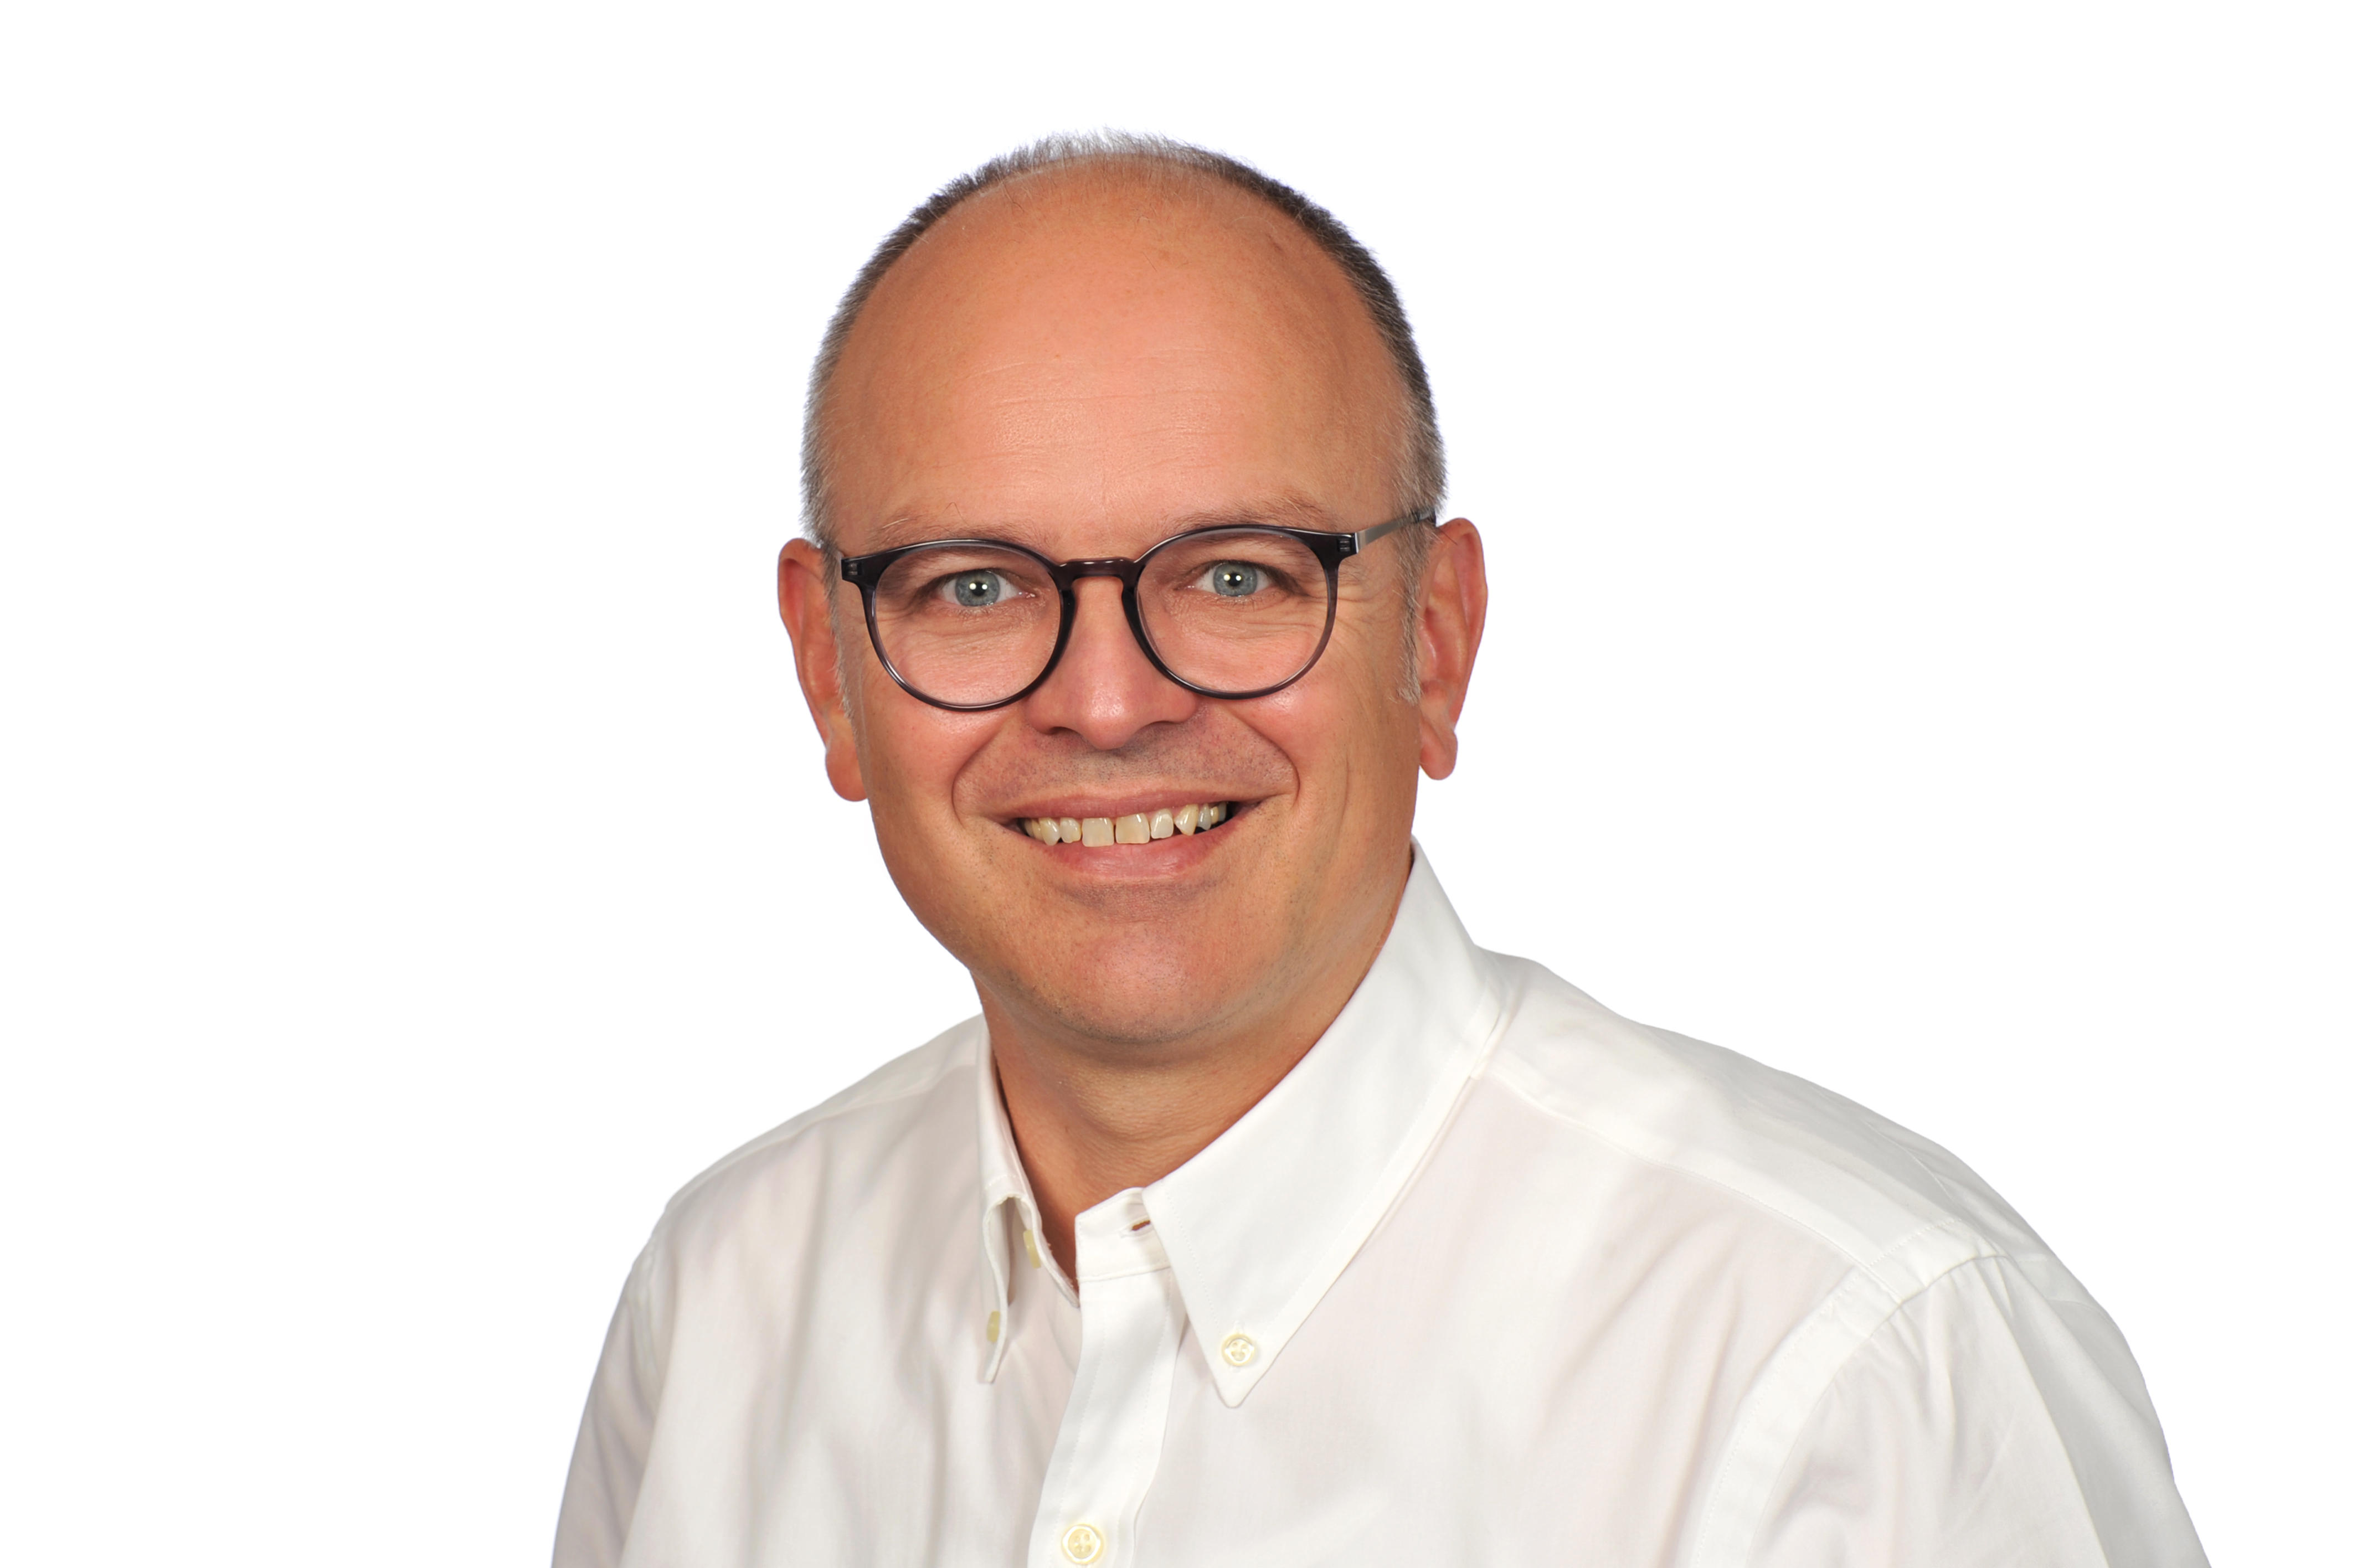 DEVK-Versicherung Dietmar Greß in Rheine, Leiter der Geschäftsstelle